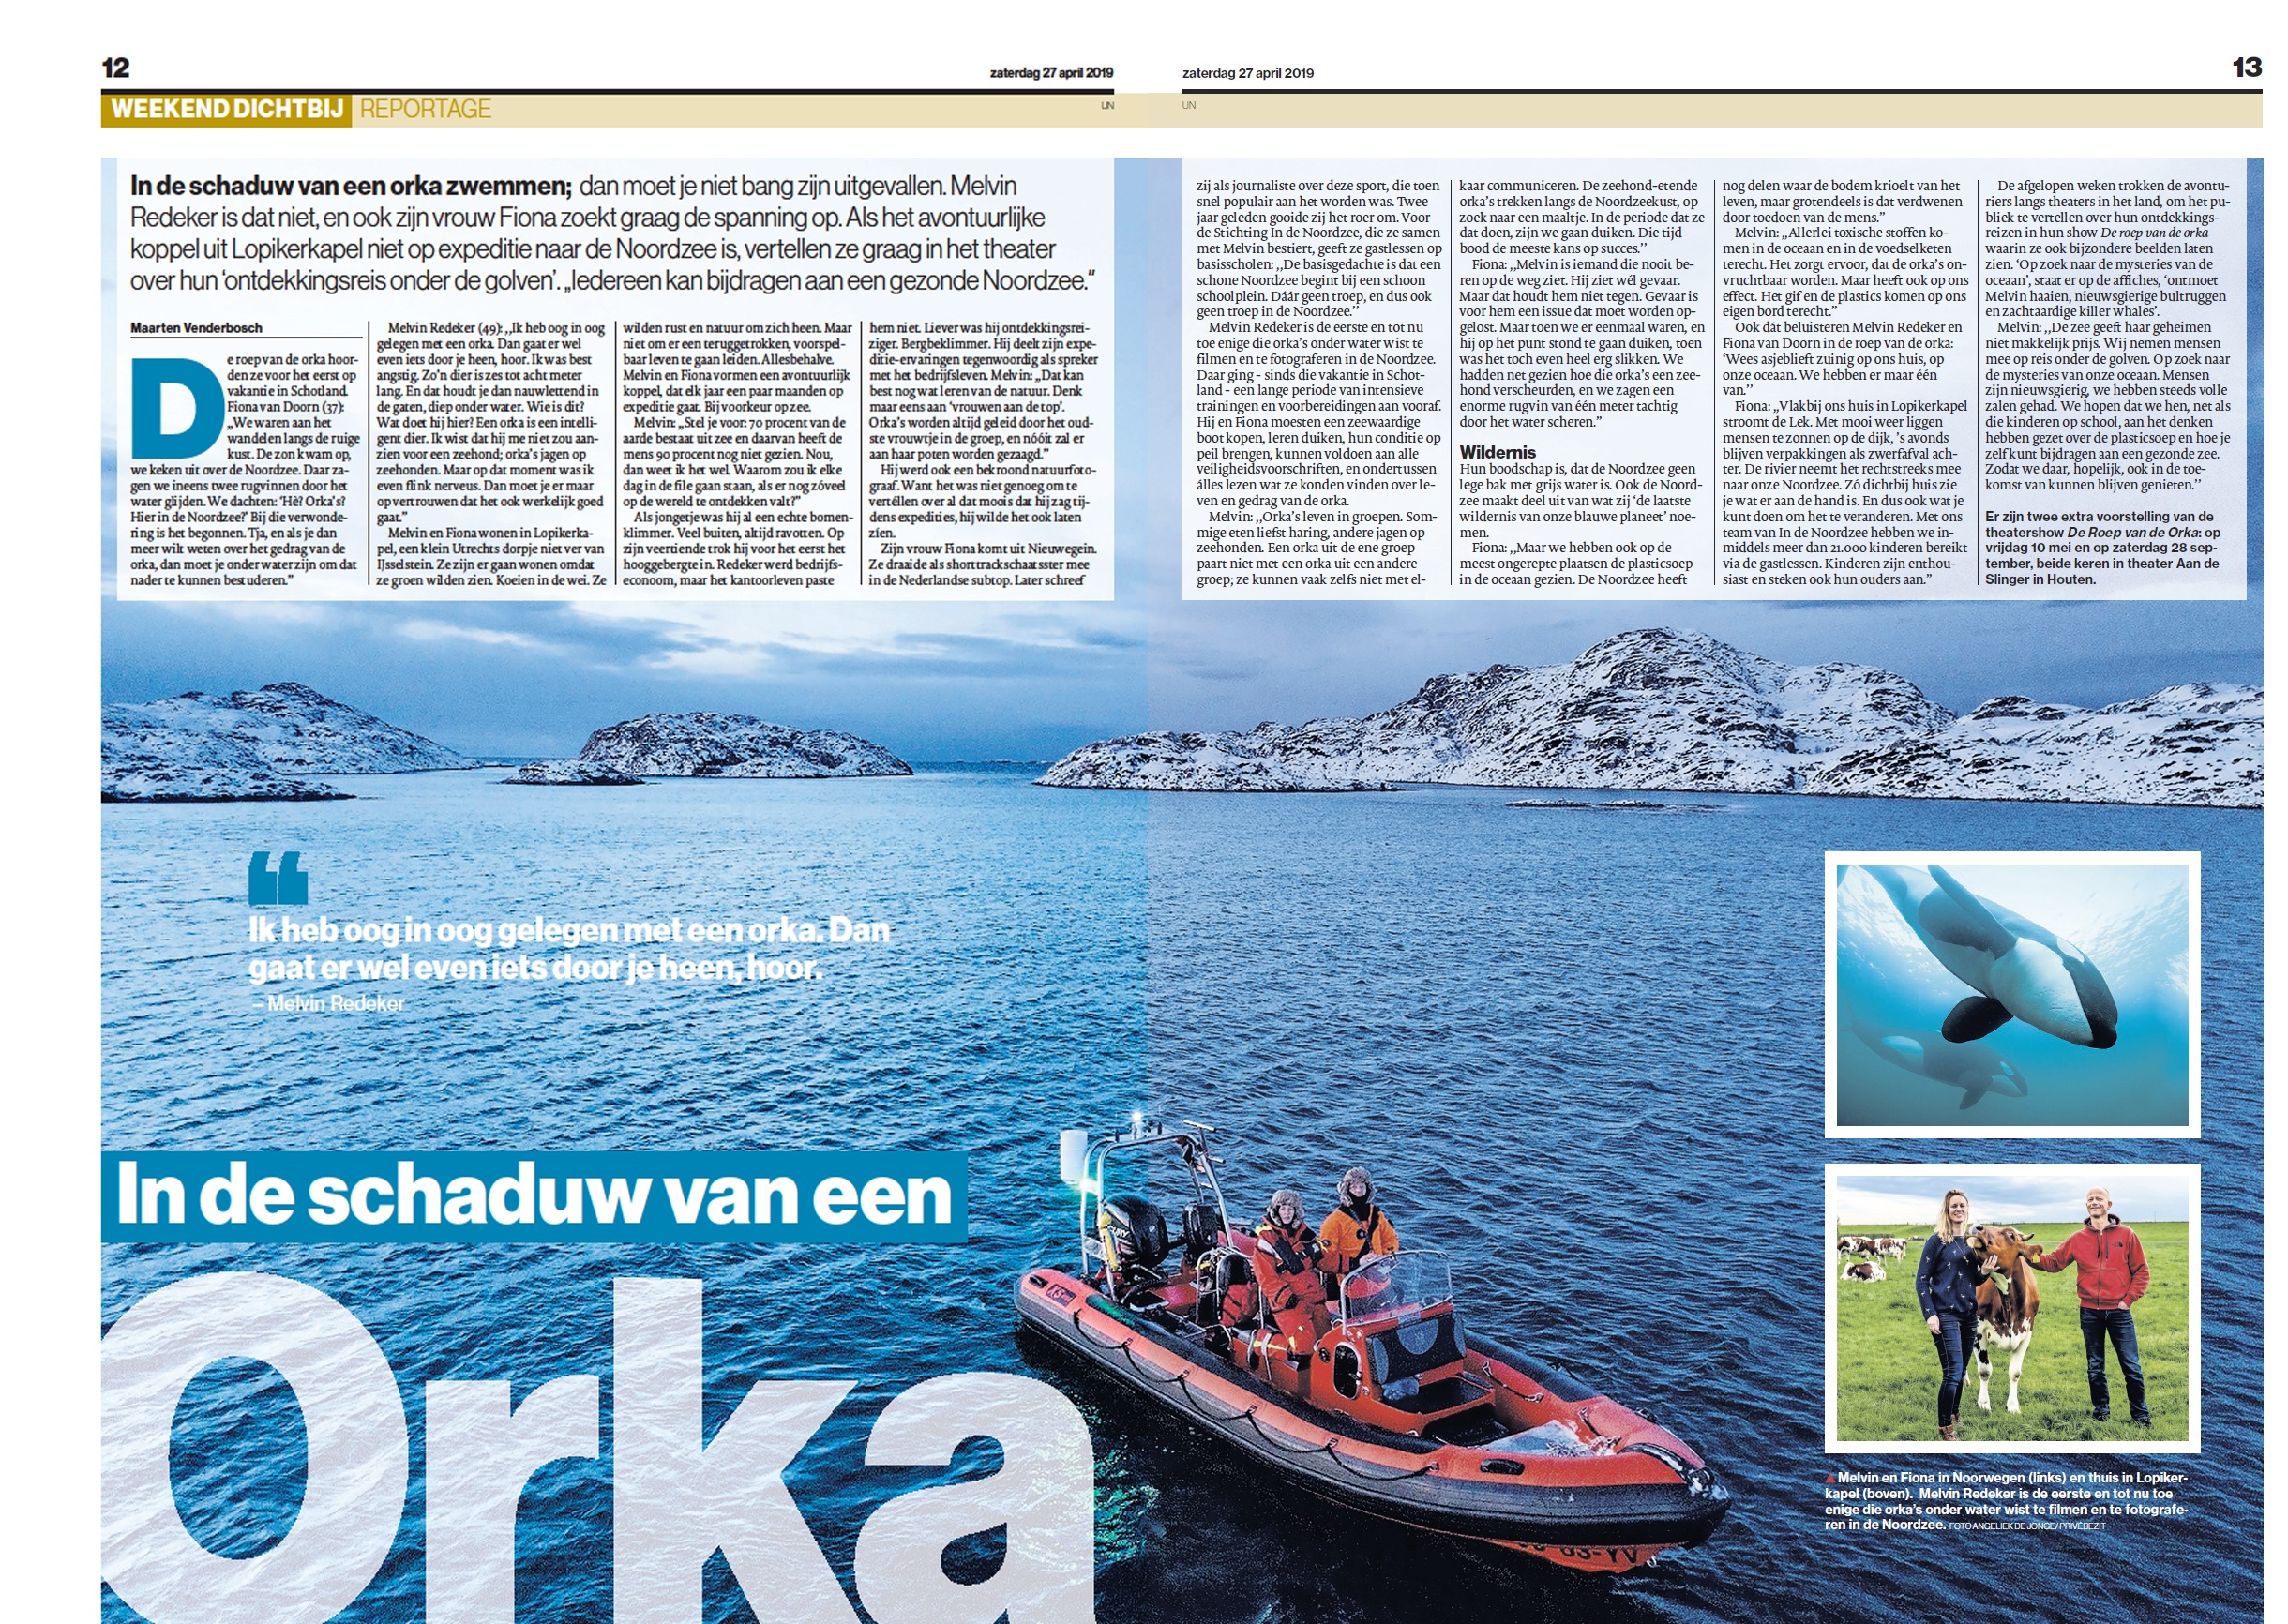 Interview in AD Utrecht: In de schaduw van een orka